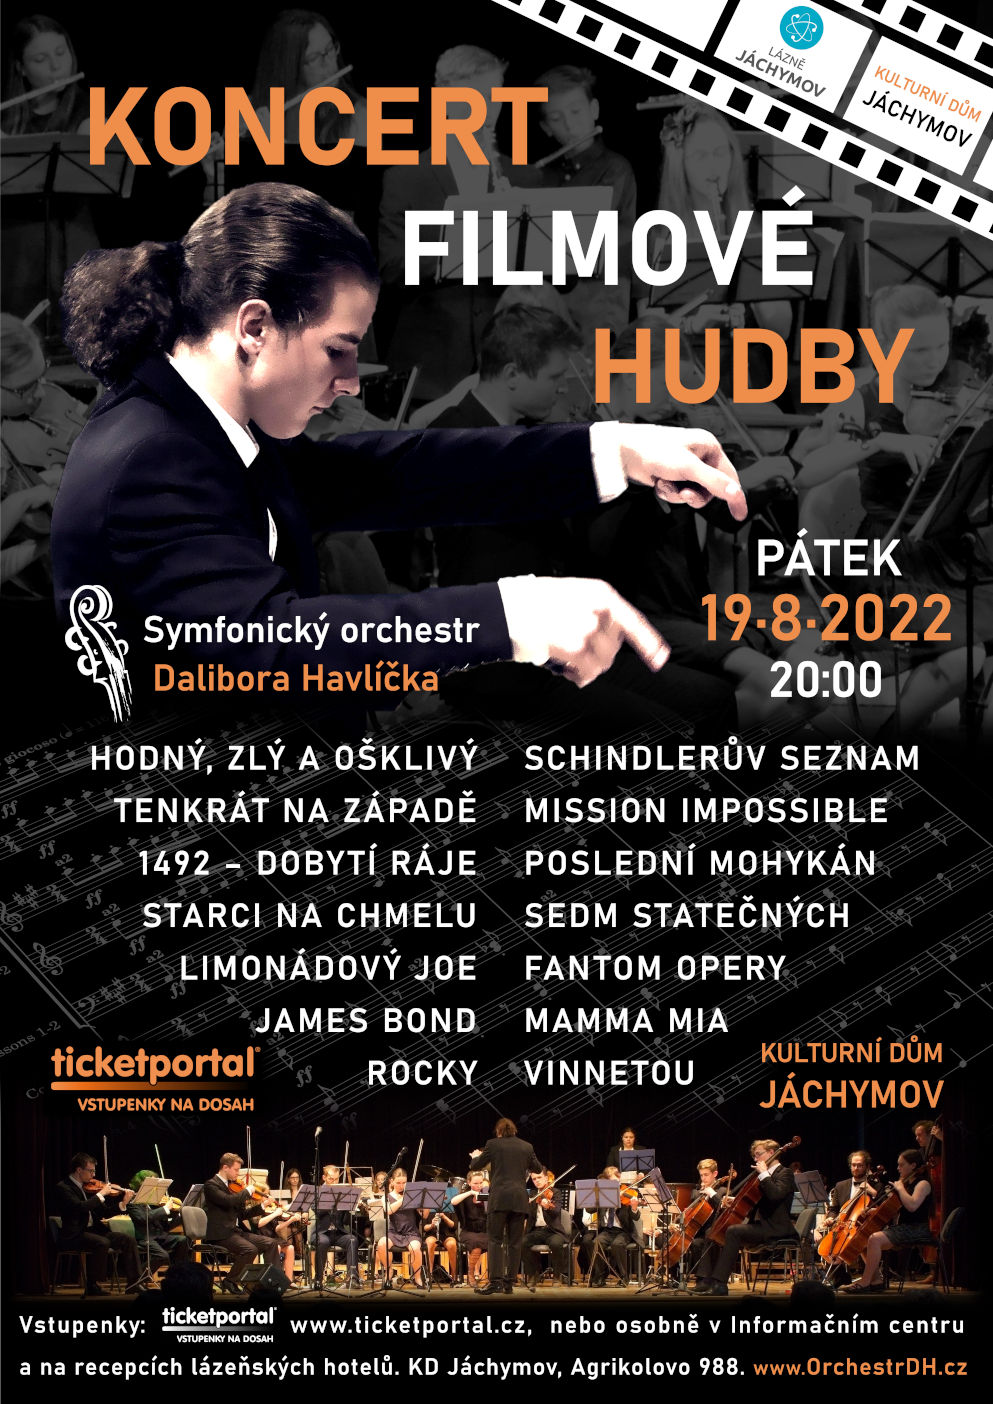 Koncert filmové hudby- Jáchymov -Kulturní dům Jáchymov, Agrikolovo 988